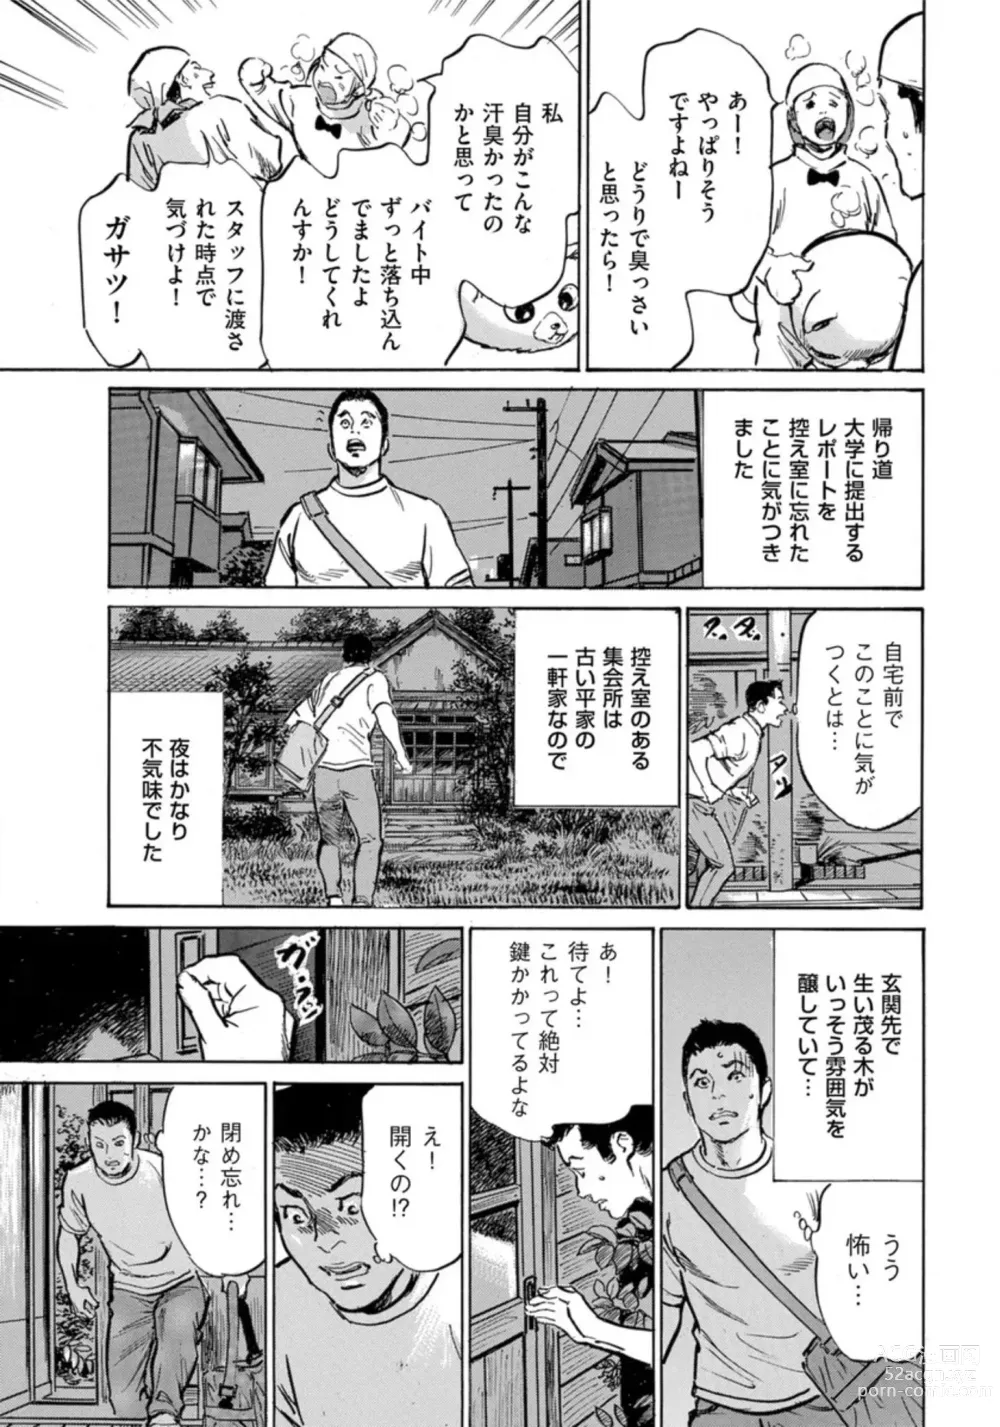 Page 10 of manga Zutto Himitsu ni Shiteita Ano Koto Zenbu Oshiemasu 14 episodes